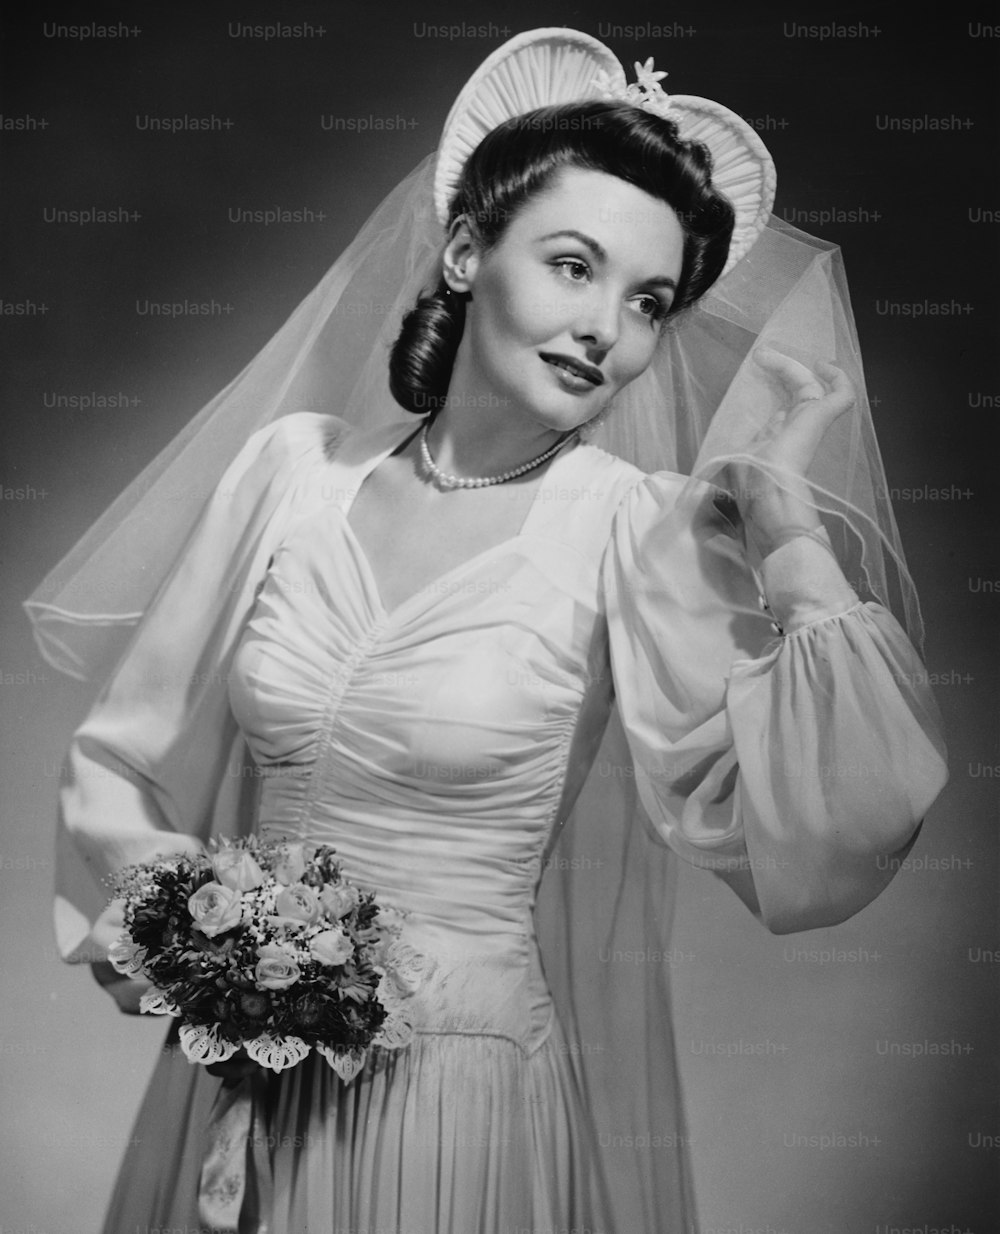 Une jeune mariée avec un voile et un bouquet, vers 1940.  (Photo de George Marks/Retrofile/Getty Images)